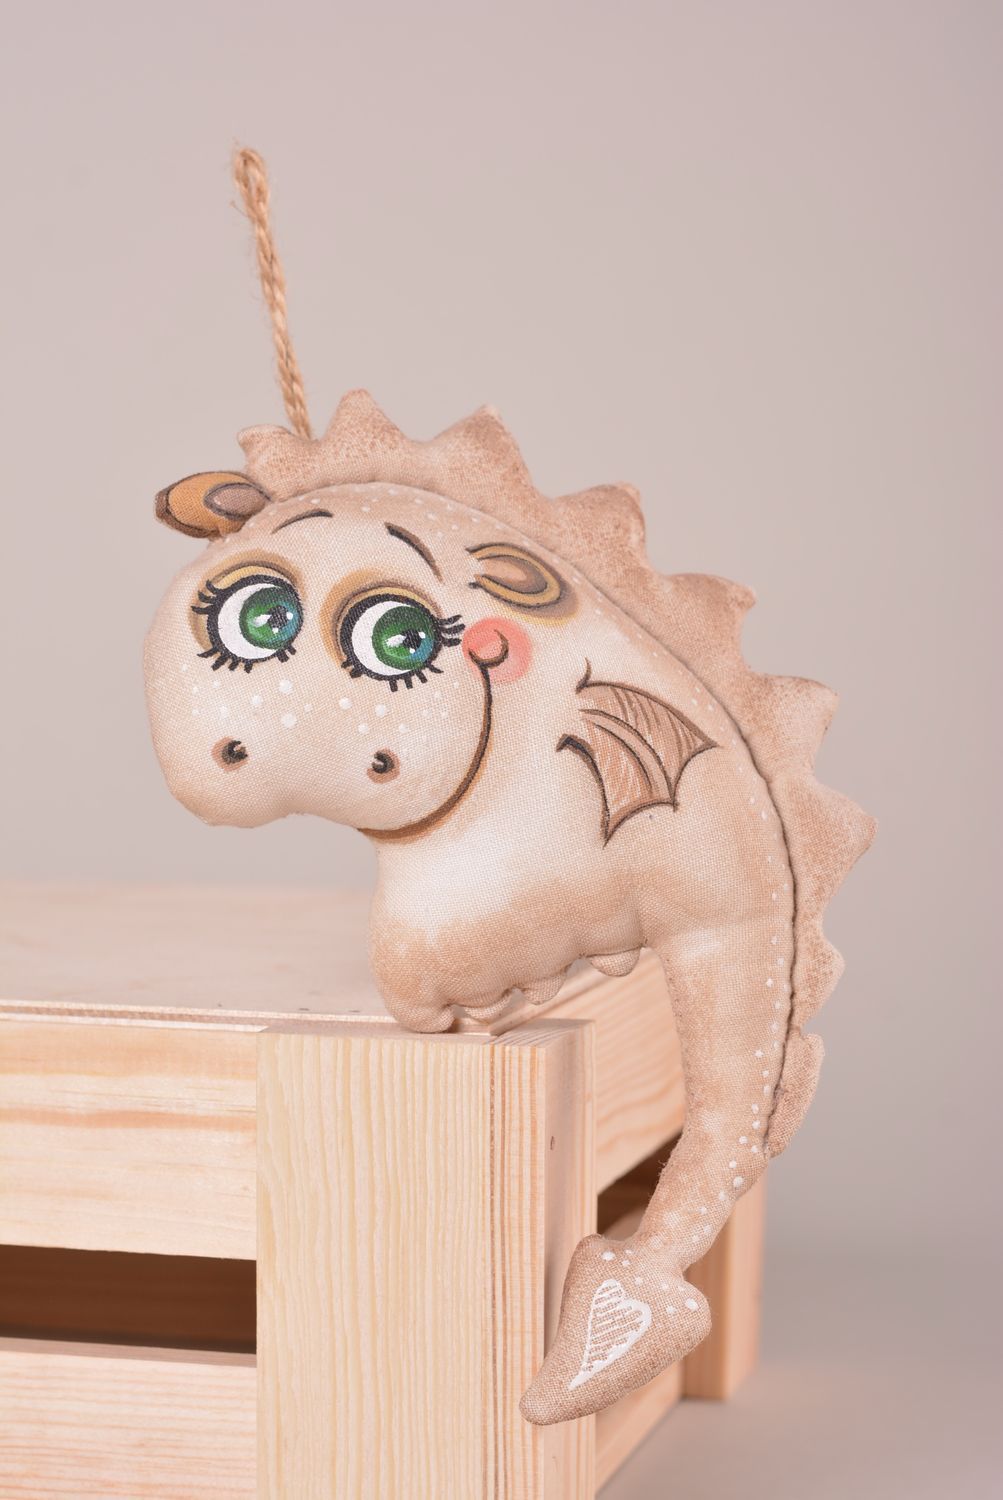 Игрушка ручной работы игрушка дракон маленькая с петелькой интересный подарок  фото 1